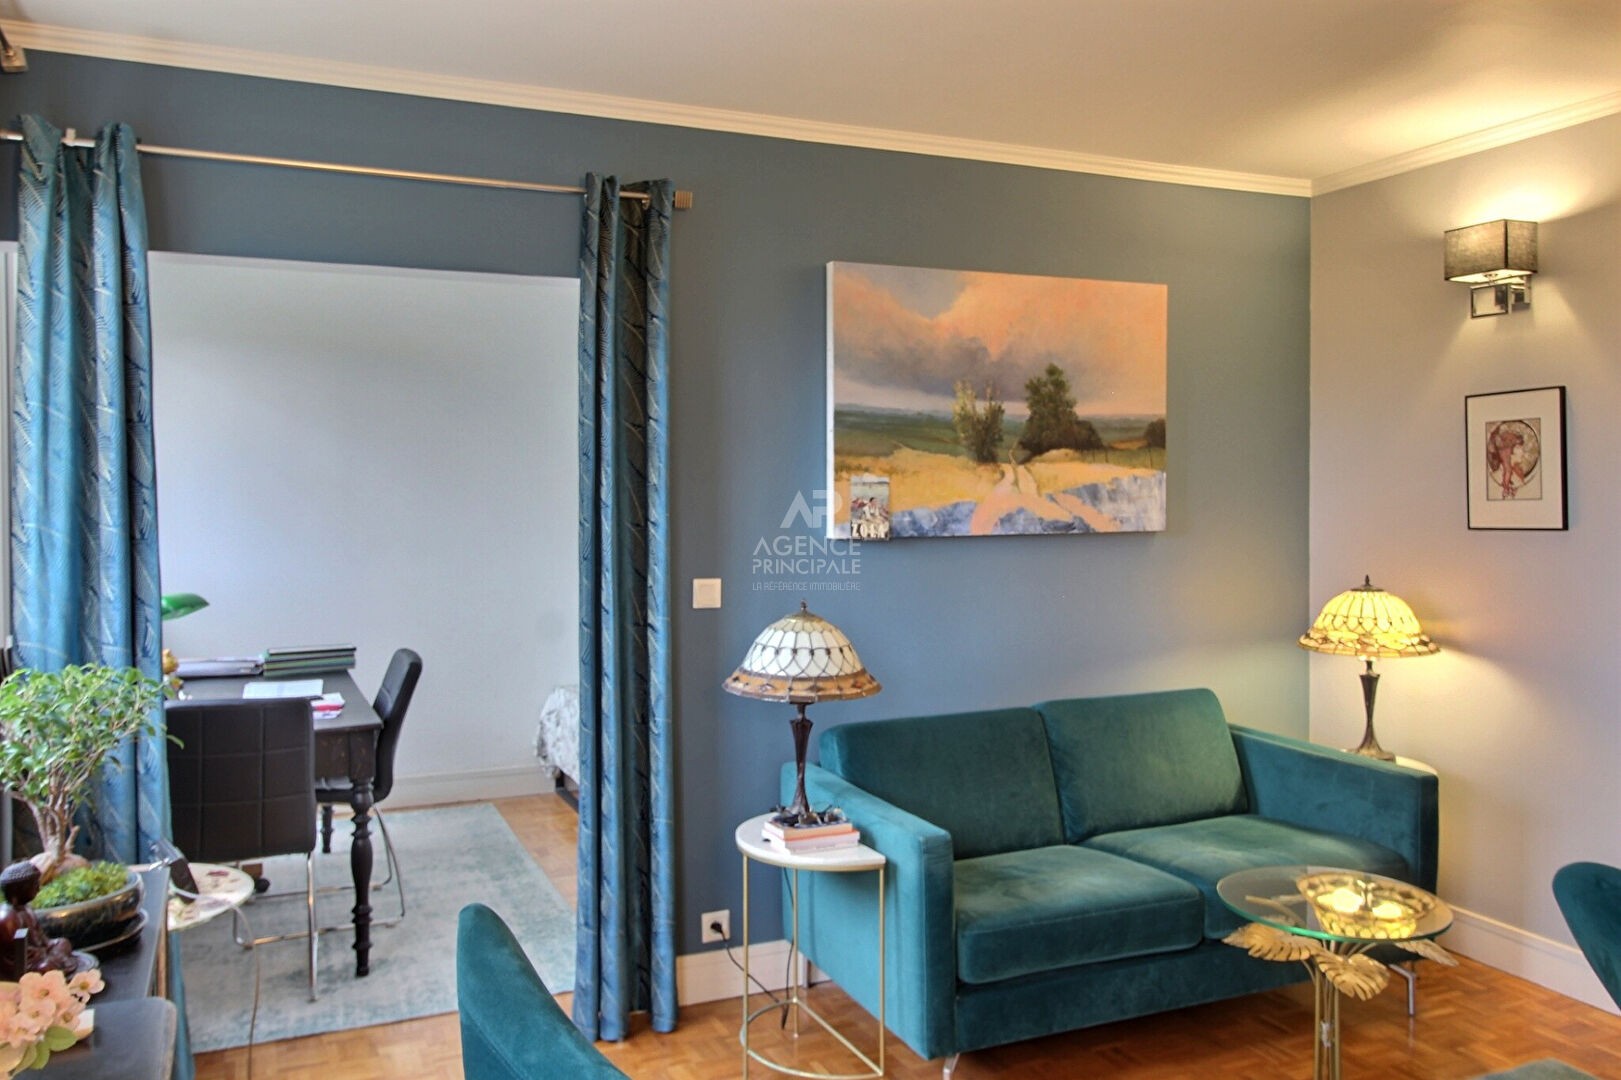 Vente Appartement à Verneuil-sur-Seine 4 pièces